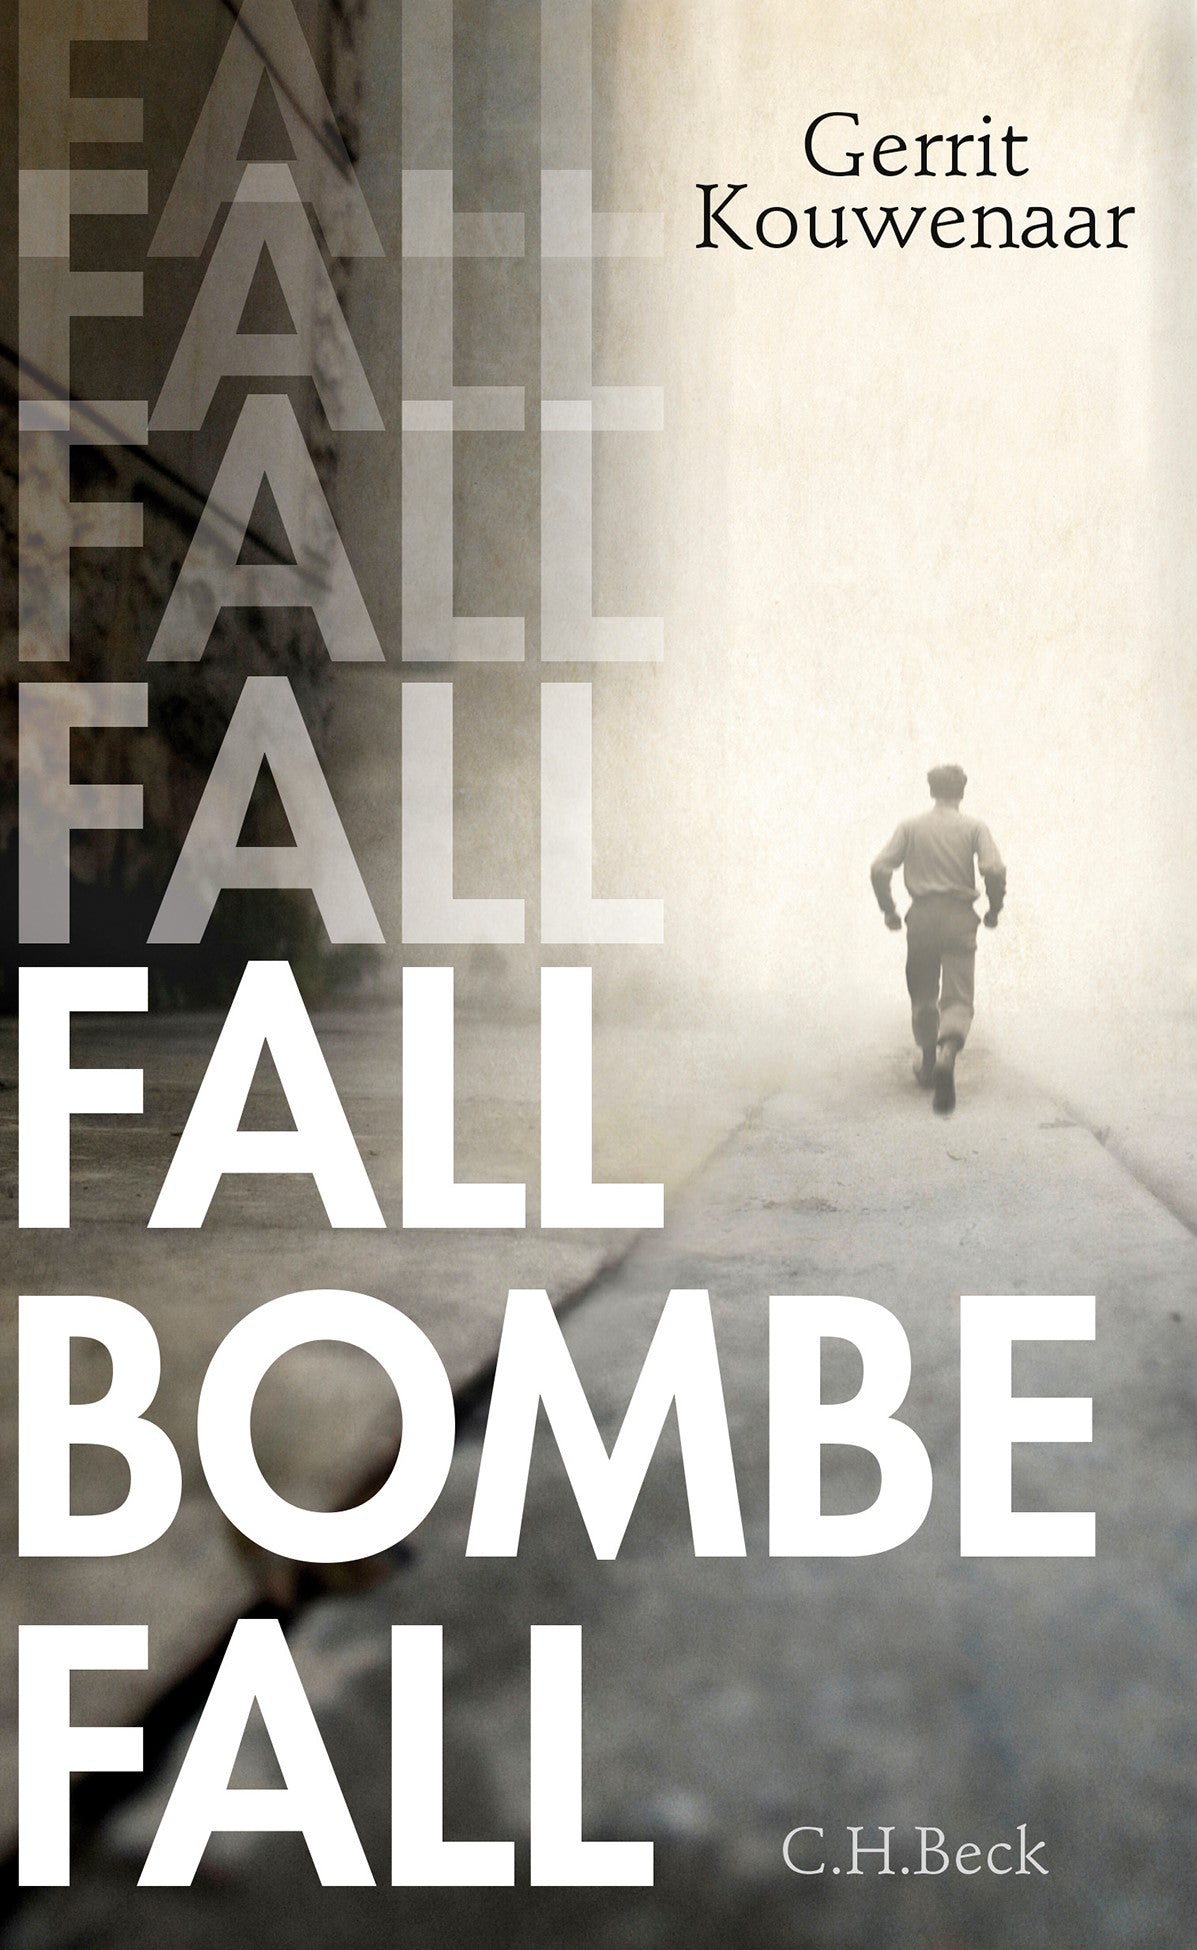 Fall Bombe Fall - Gerrit Kouwenaar